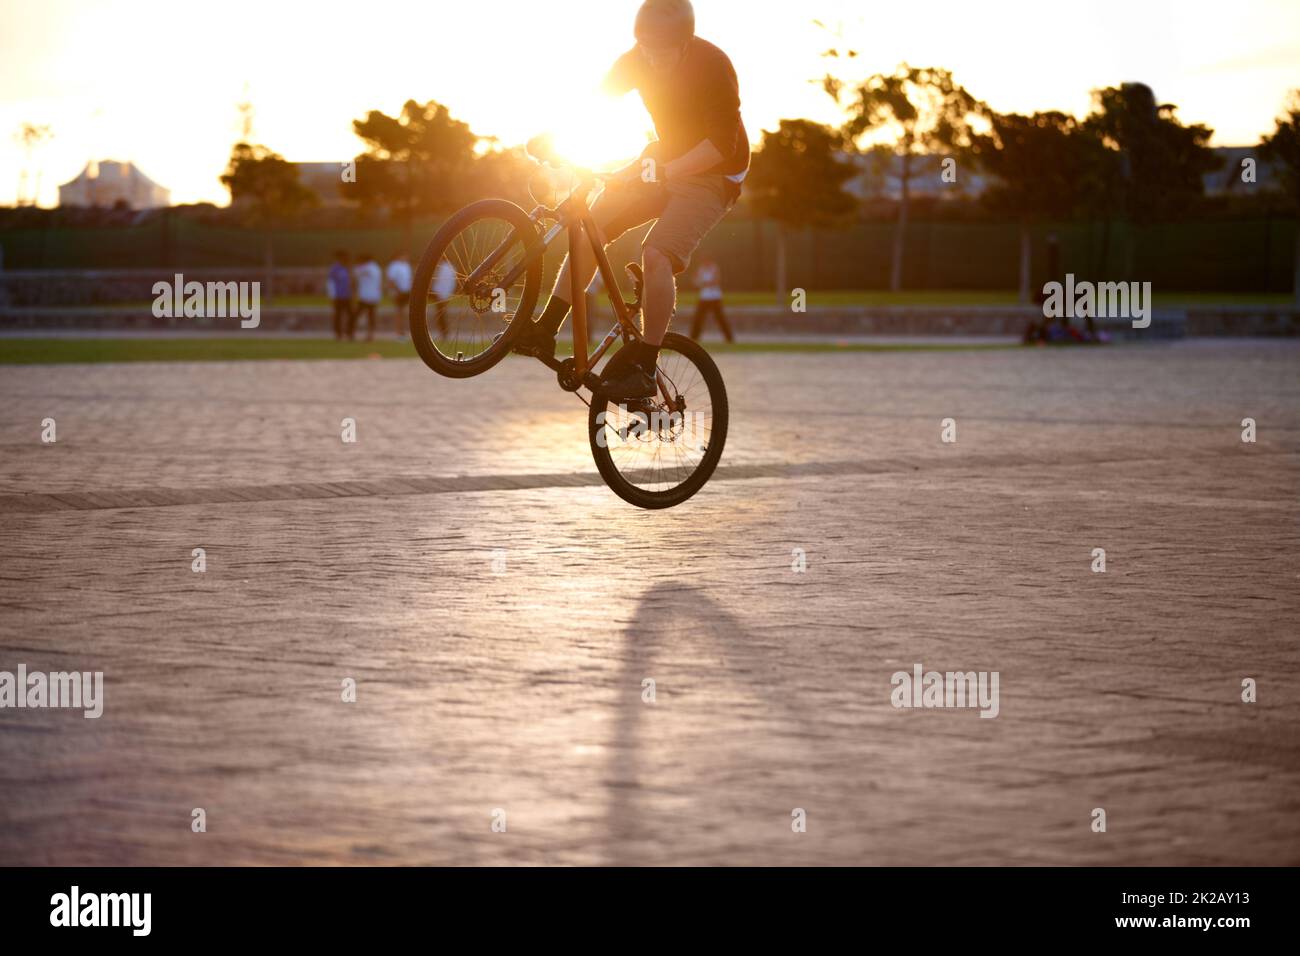 Ich kann dieses bmx tun lassen, was ich will. Aufnahme eines Mannes, der Tricks auf seinem Fahrrad macht, mit Sonneneinstrahlung. Stockfoto